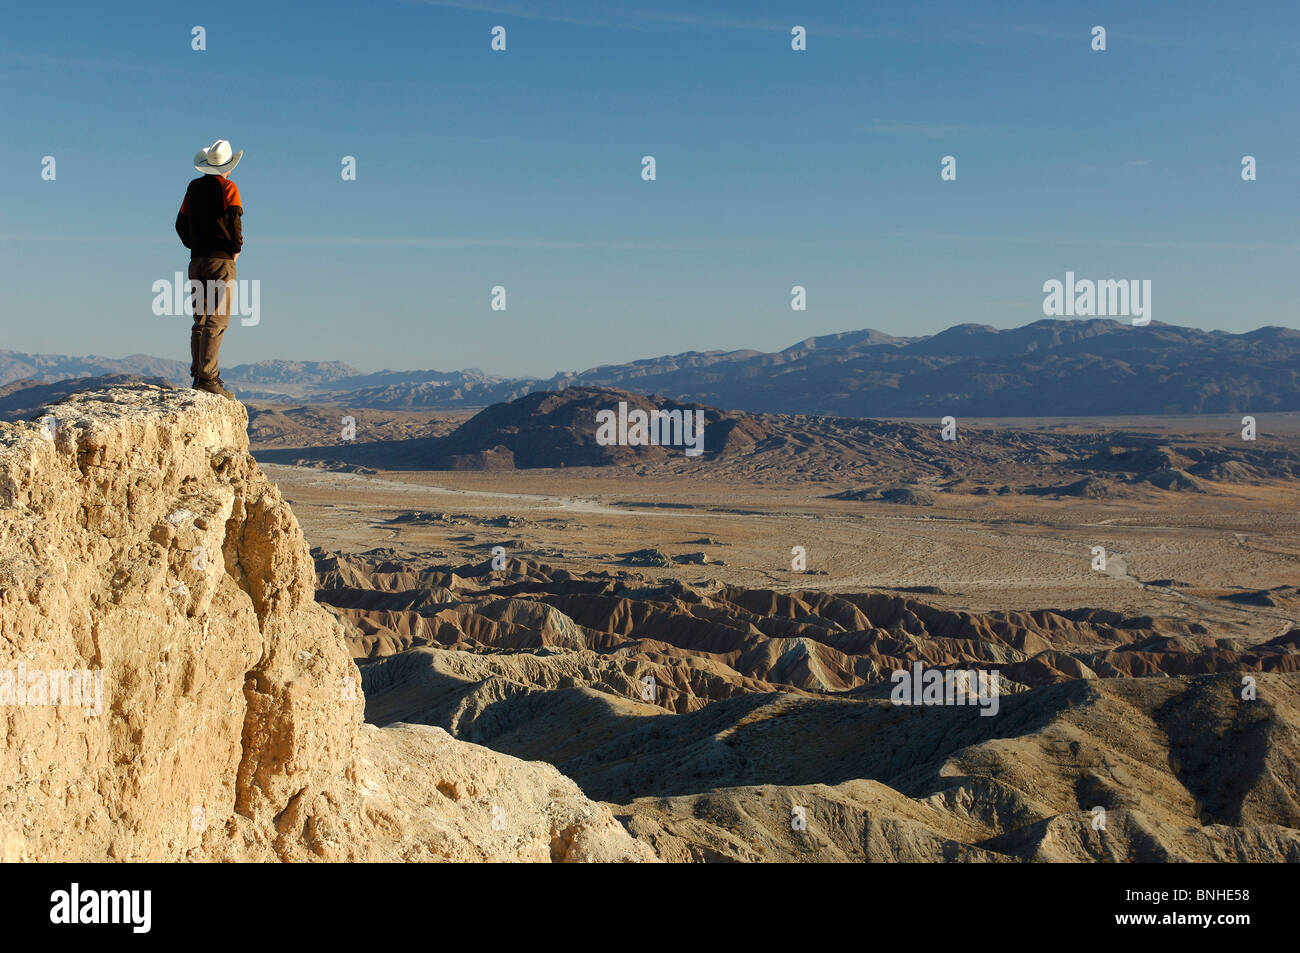 USA-Kalifornien in der Schrift Punkt Anza Borrego Desert State Park am Abgrund einer Person Freiheit stehen Ansicht Landschaftskulisse Stockfoto